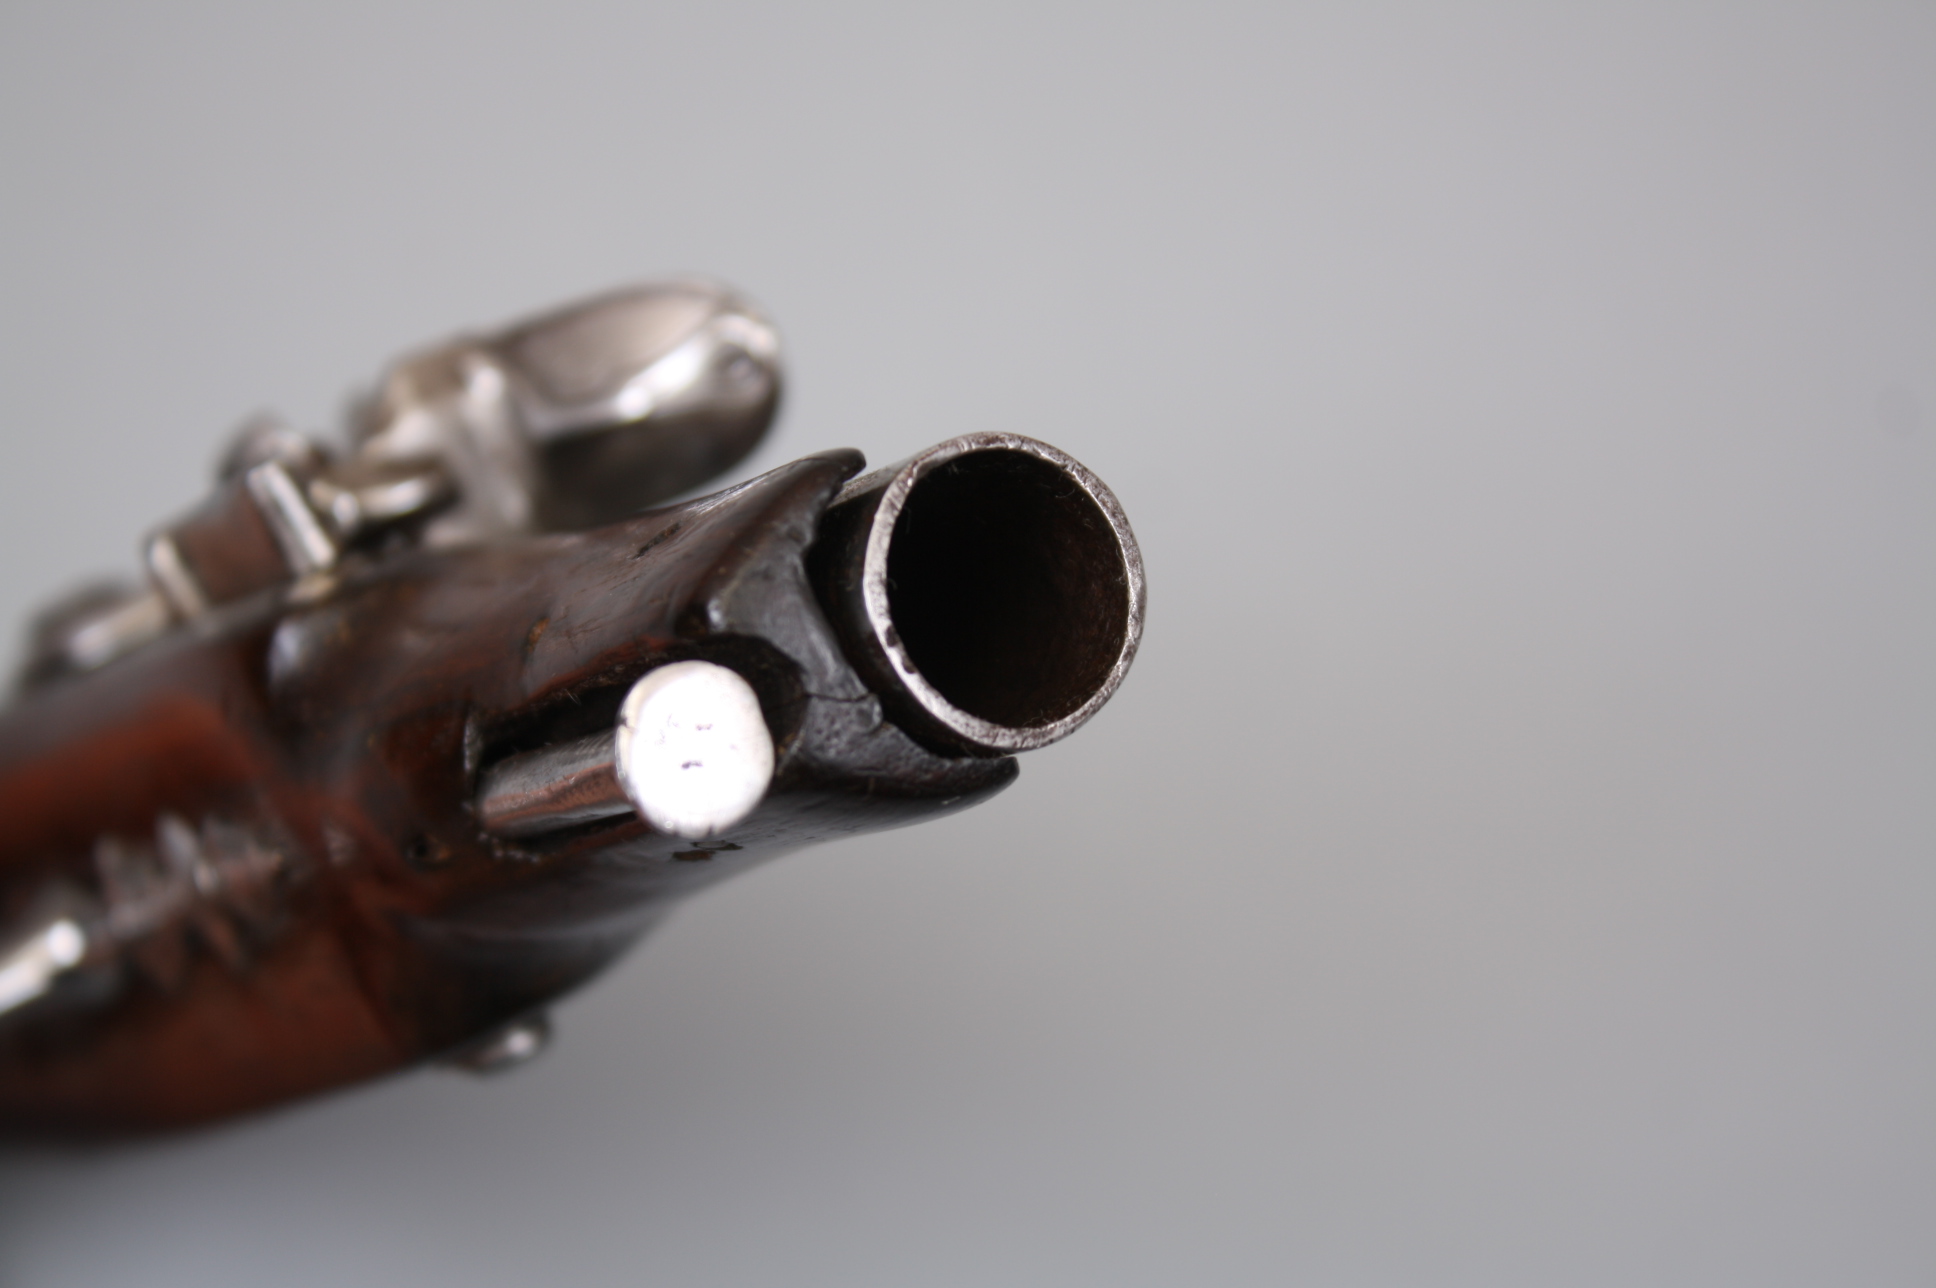 Пистолет кремневый карманный начало 19 века, Франция.